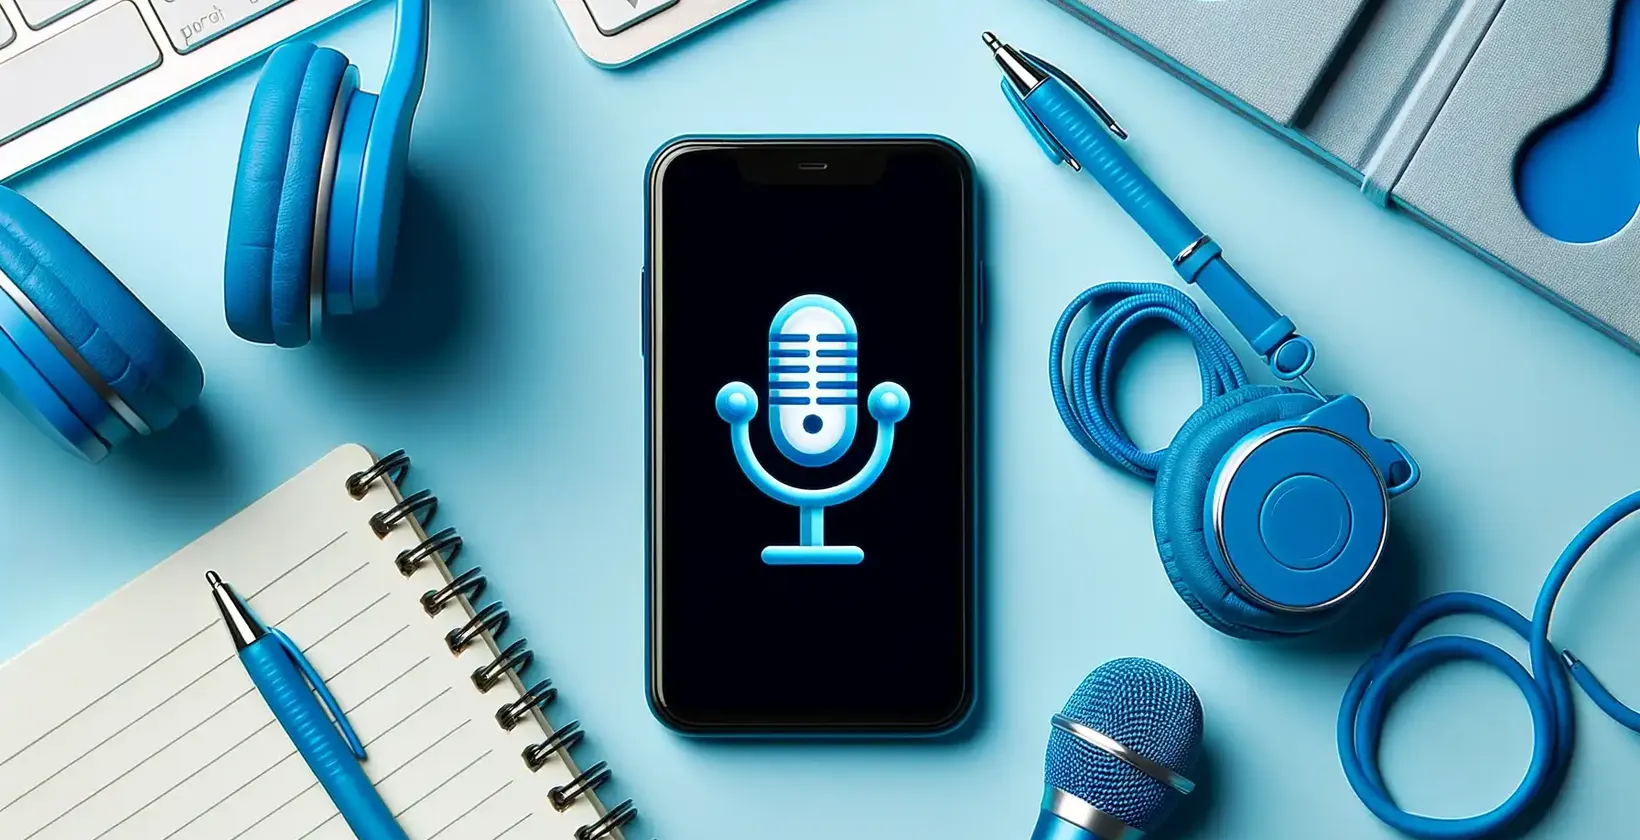 Aplicación para transcribir audio mostrada en un smartphone con auriculares azules, bloc de notas y accesorios tecnológicos.